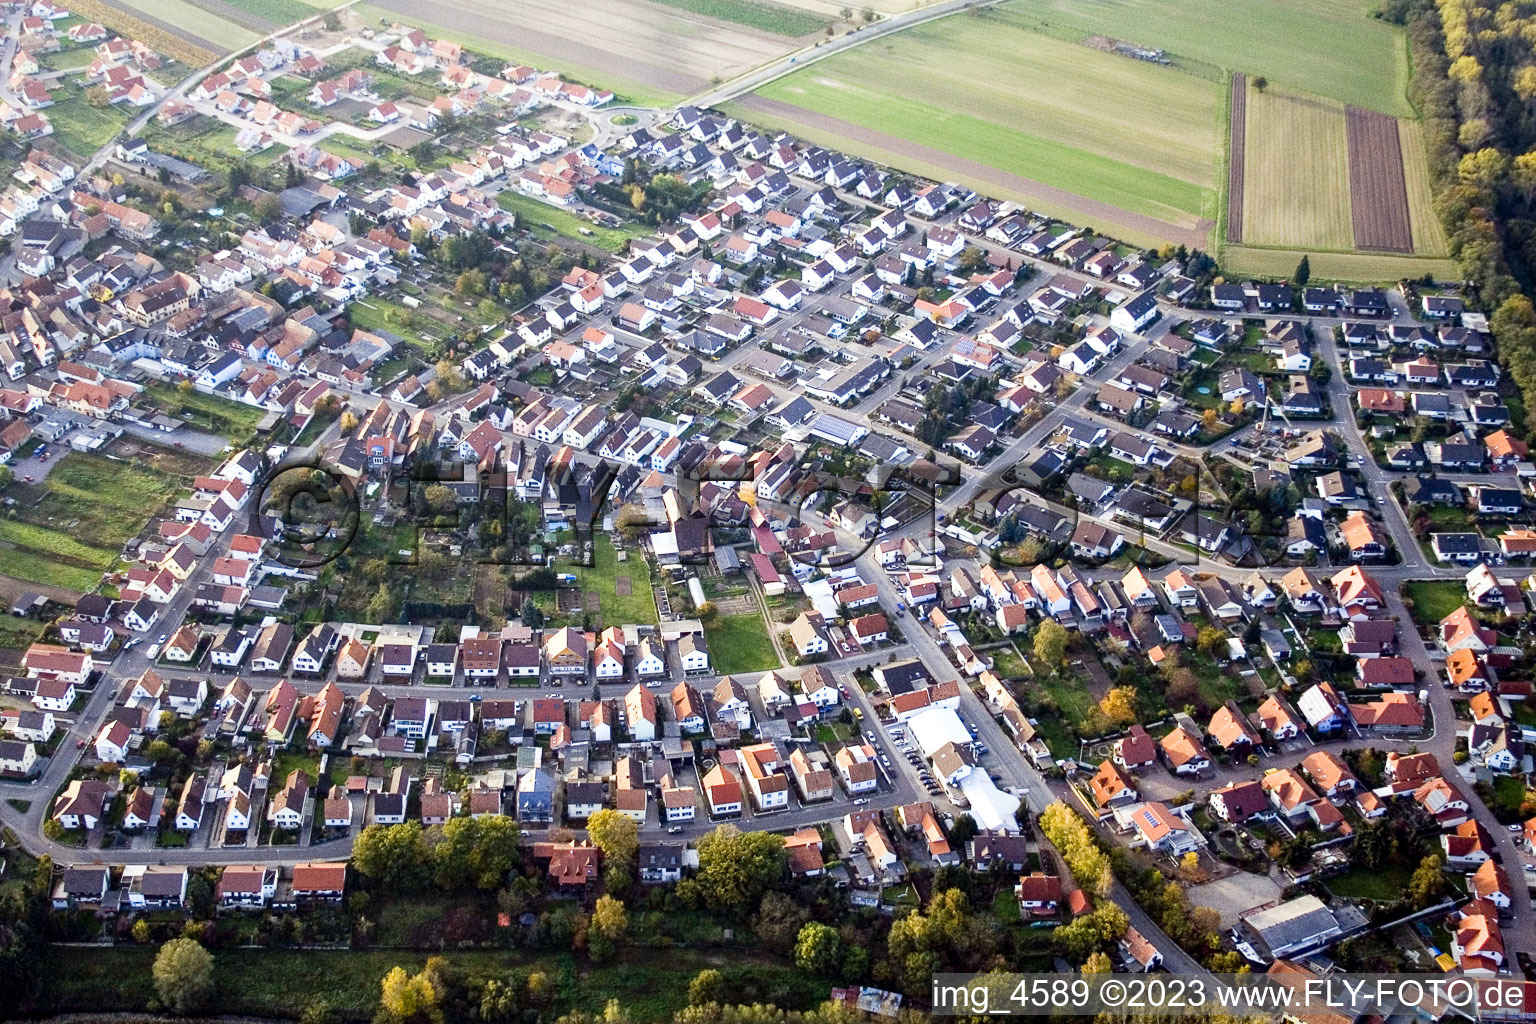 Vue aérienne de De l'est à Hördt dans le département Rhénanie-Palatinat, Allemagne